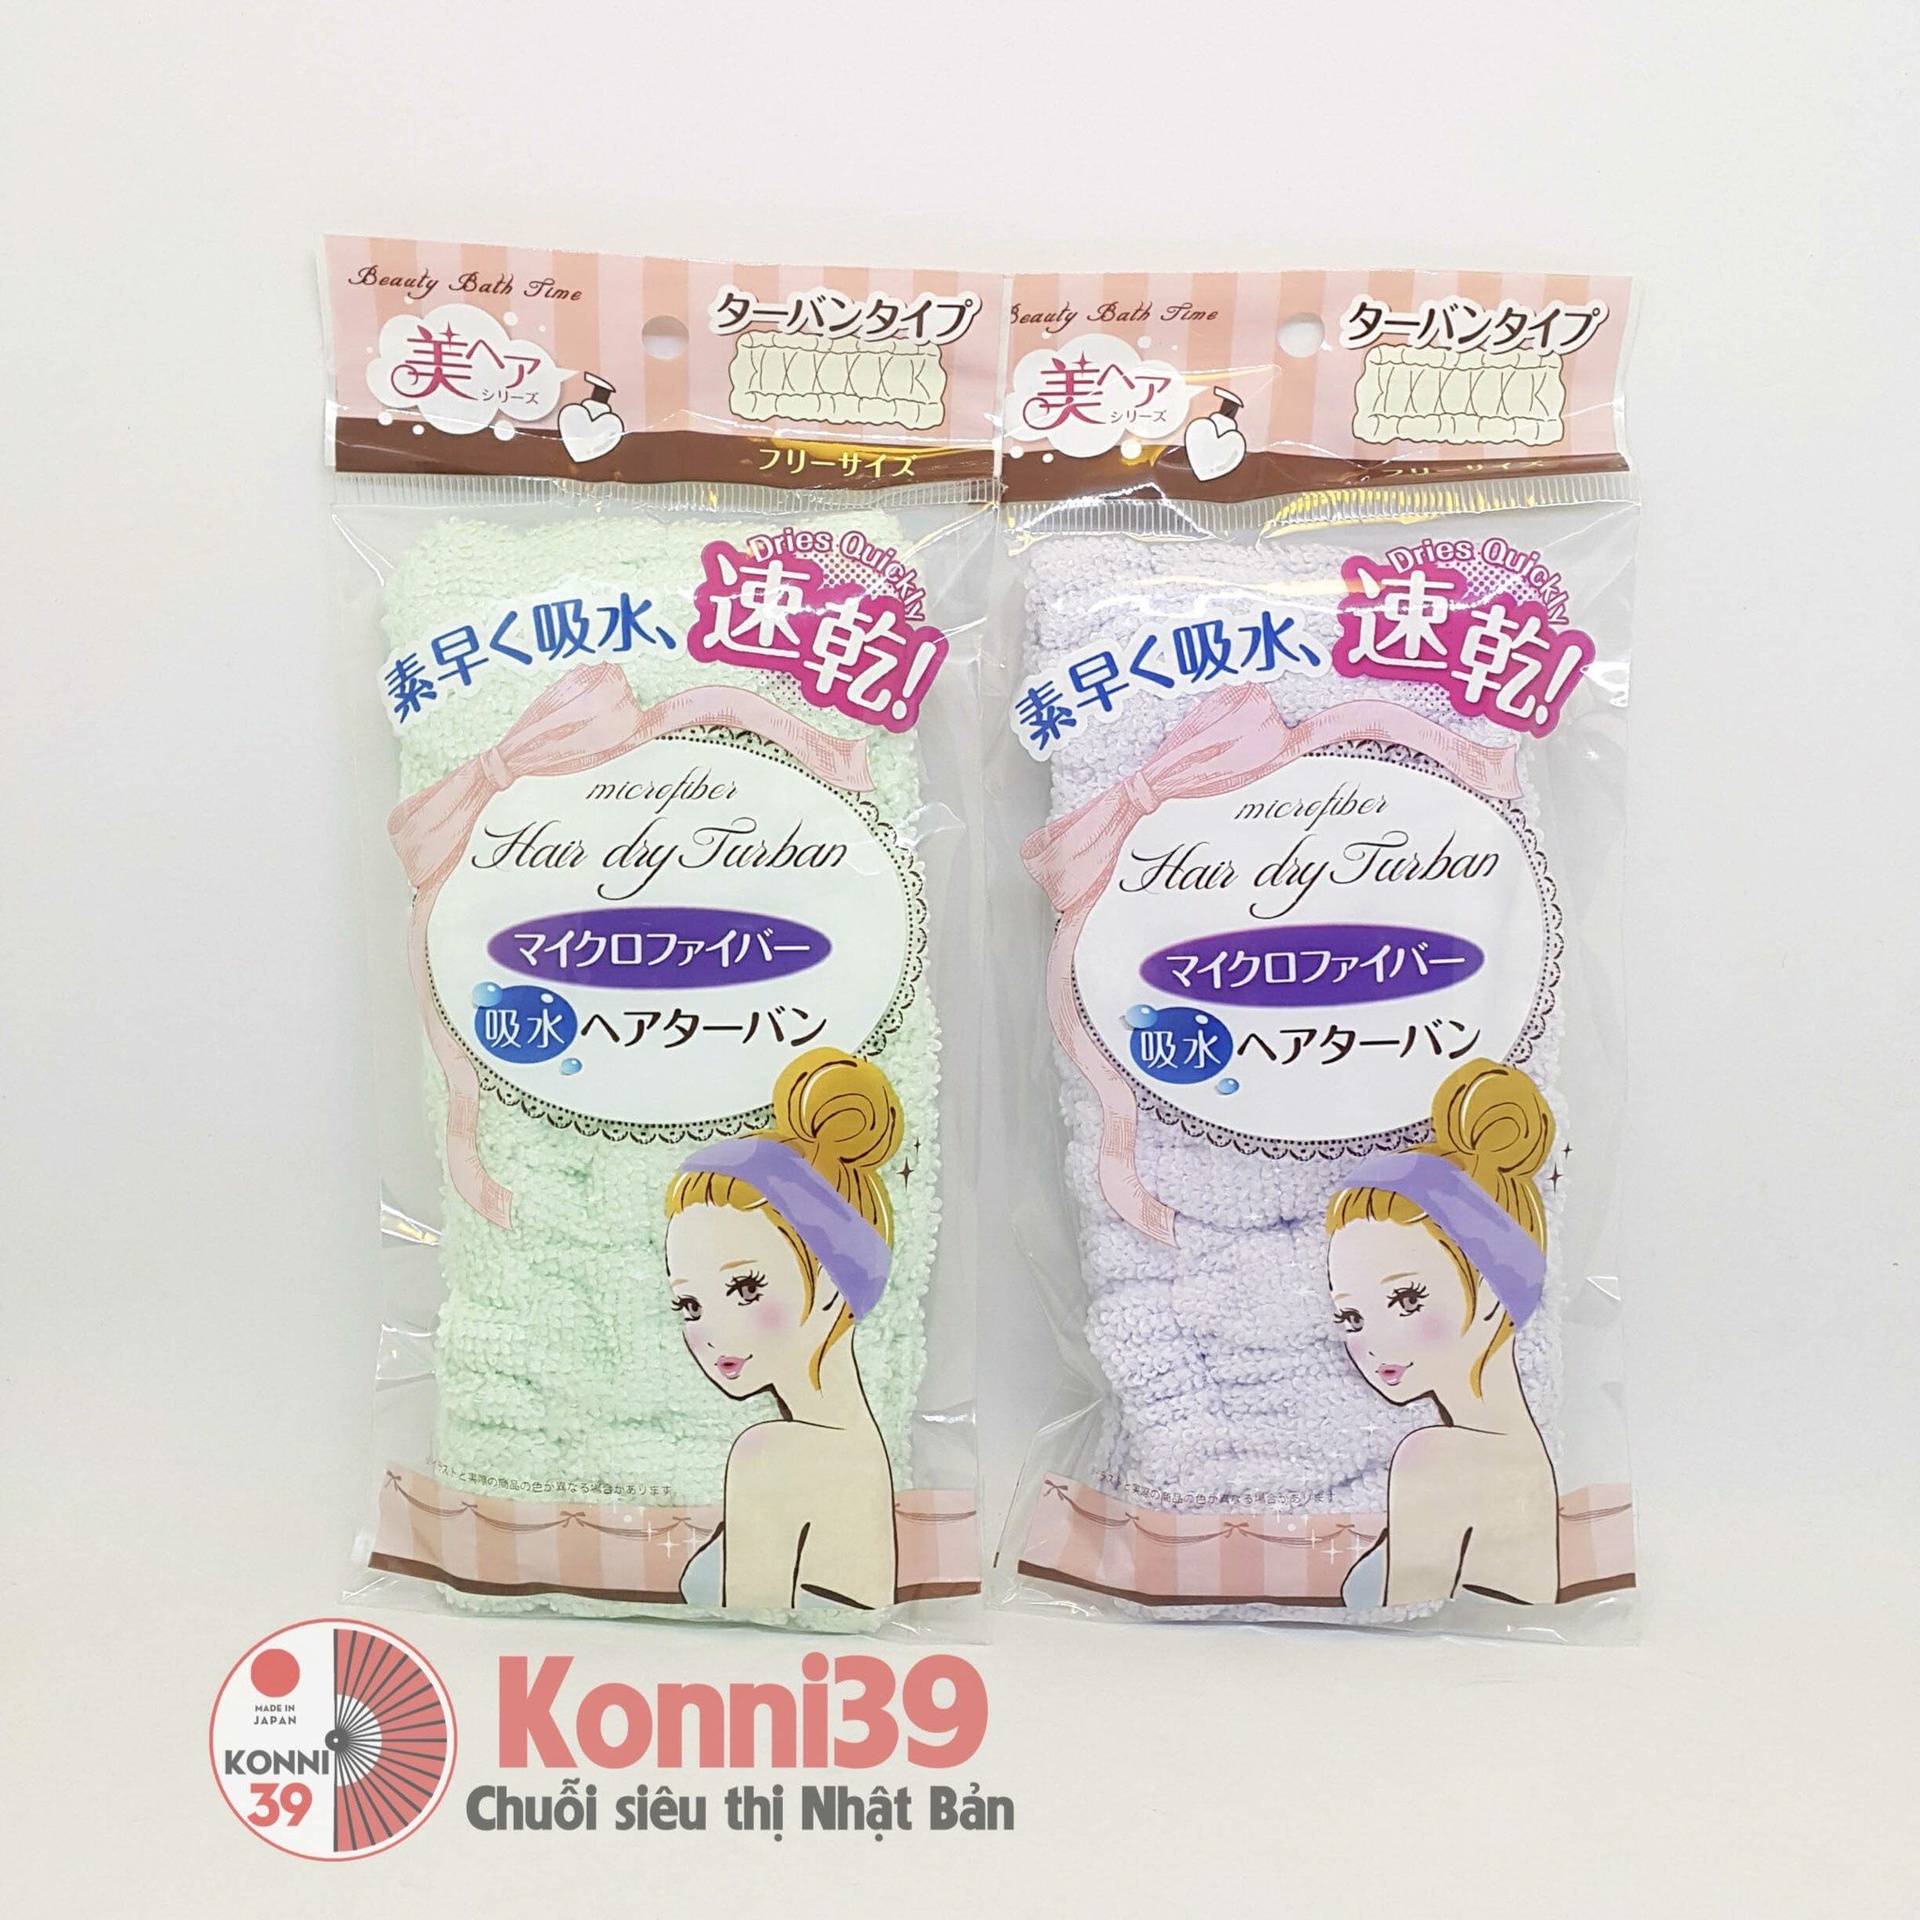 Băng đô Hair Dry Turban (xanh/tím) -p10-Hàng Nhật đồng giá Konni39